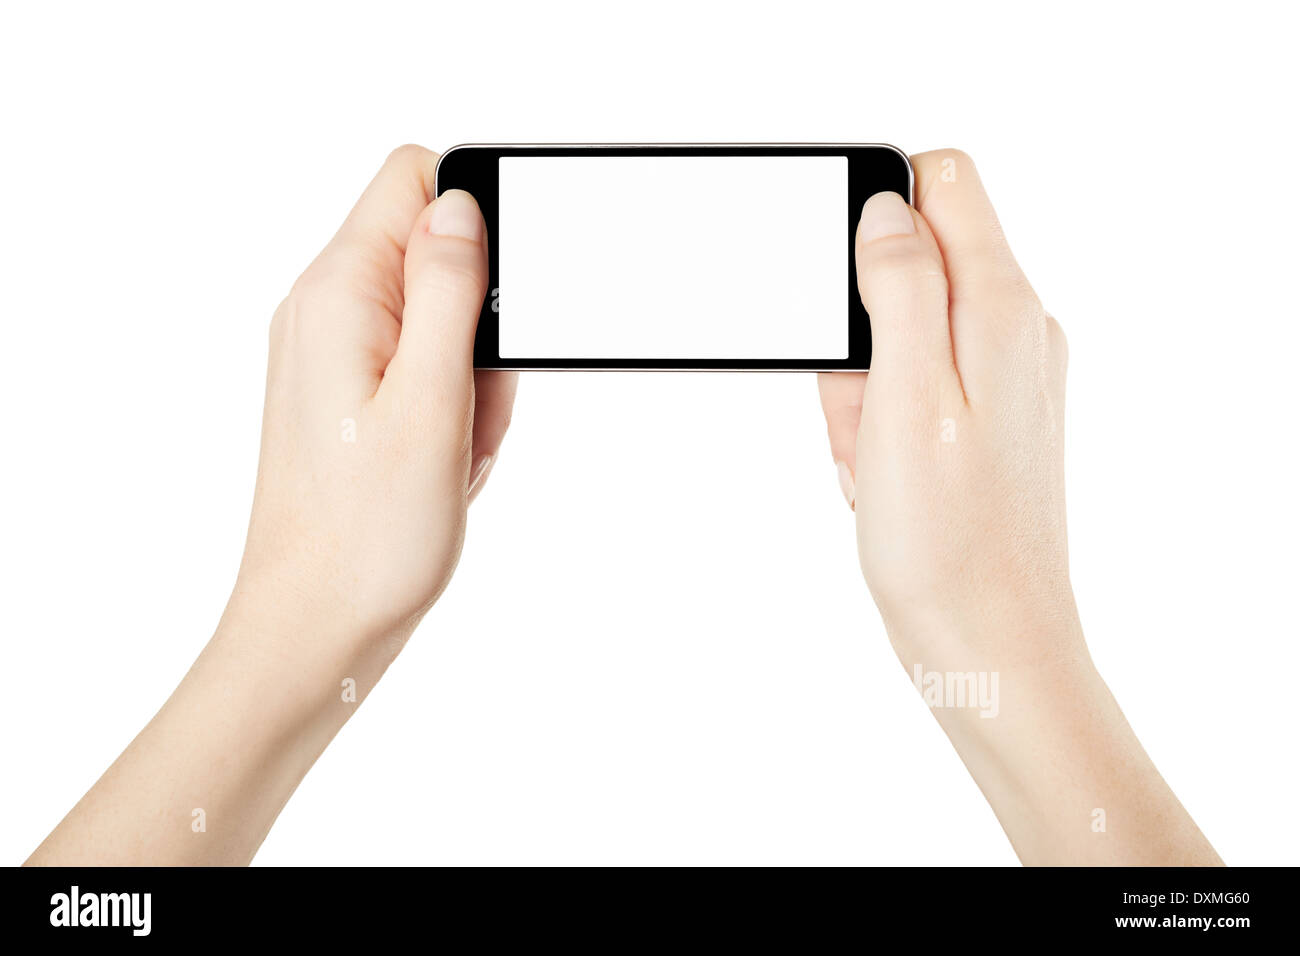 Hands holding smartphone à l'horizontale, les jeux Banque D'Images